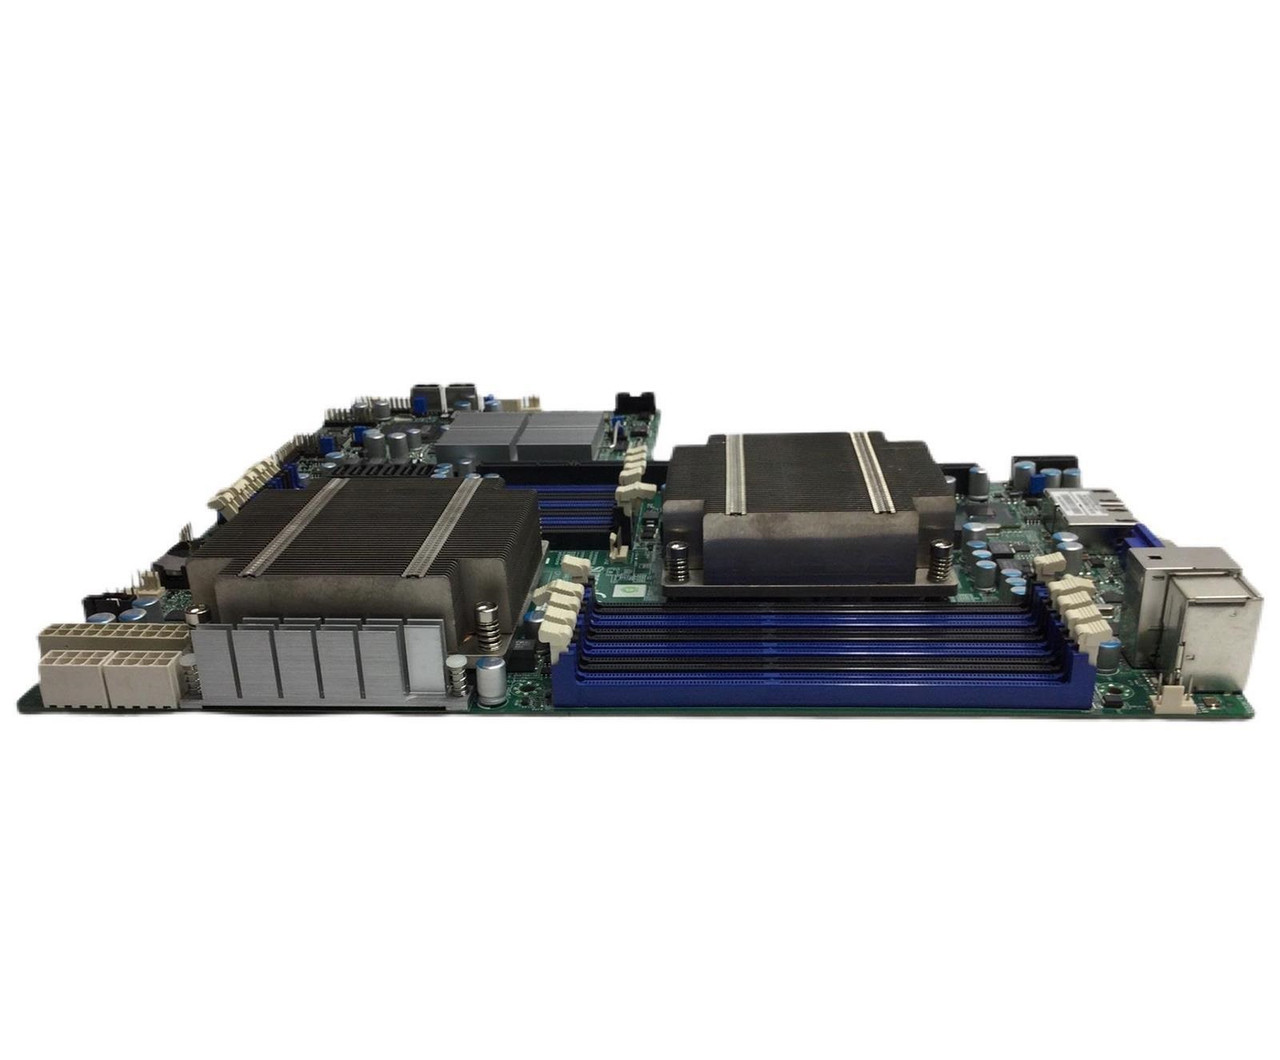 Supermicro X8DTU-F LGA 1366 Proprietary System Board W/ 2x E5620 and 2x  Heatsink